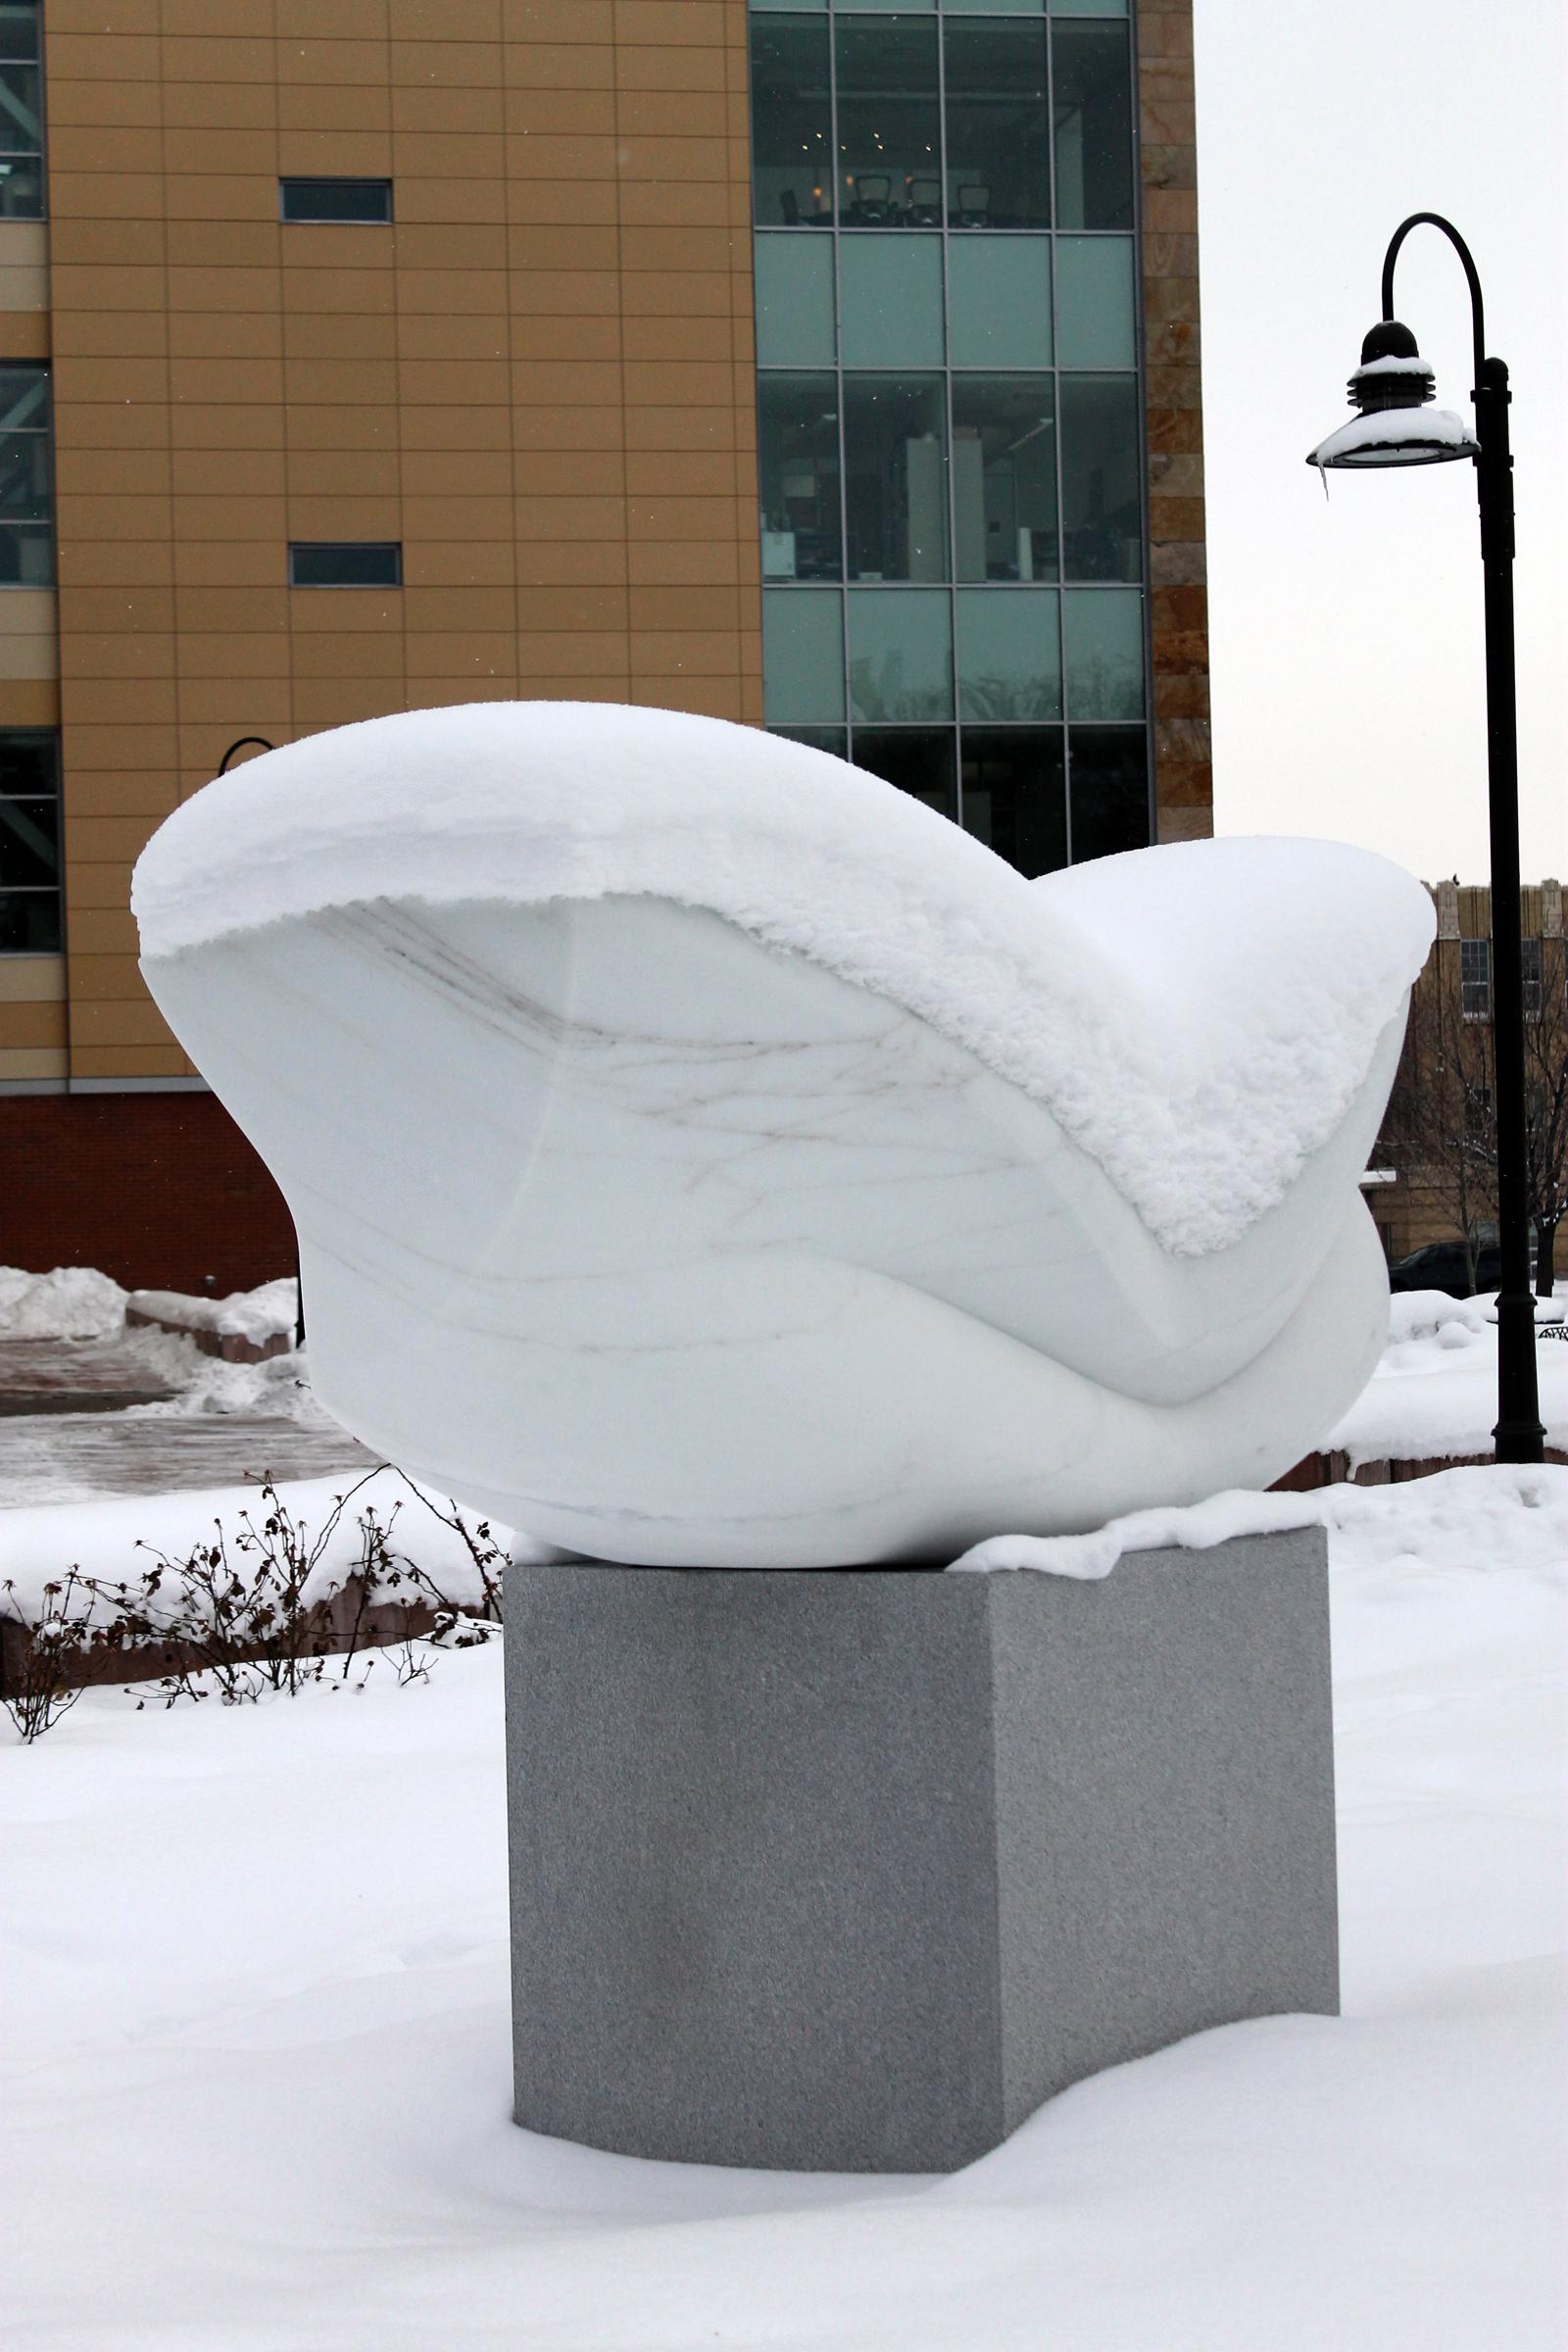 Caine College Professor Designs Ag Sculpture The Utah Statesman